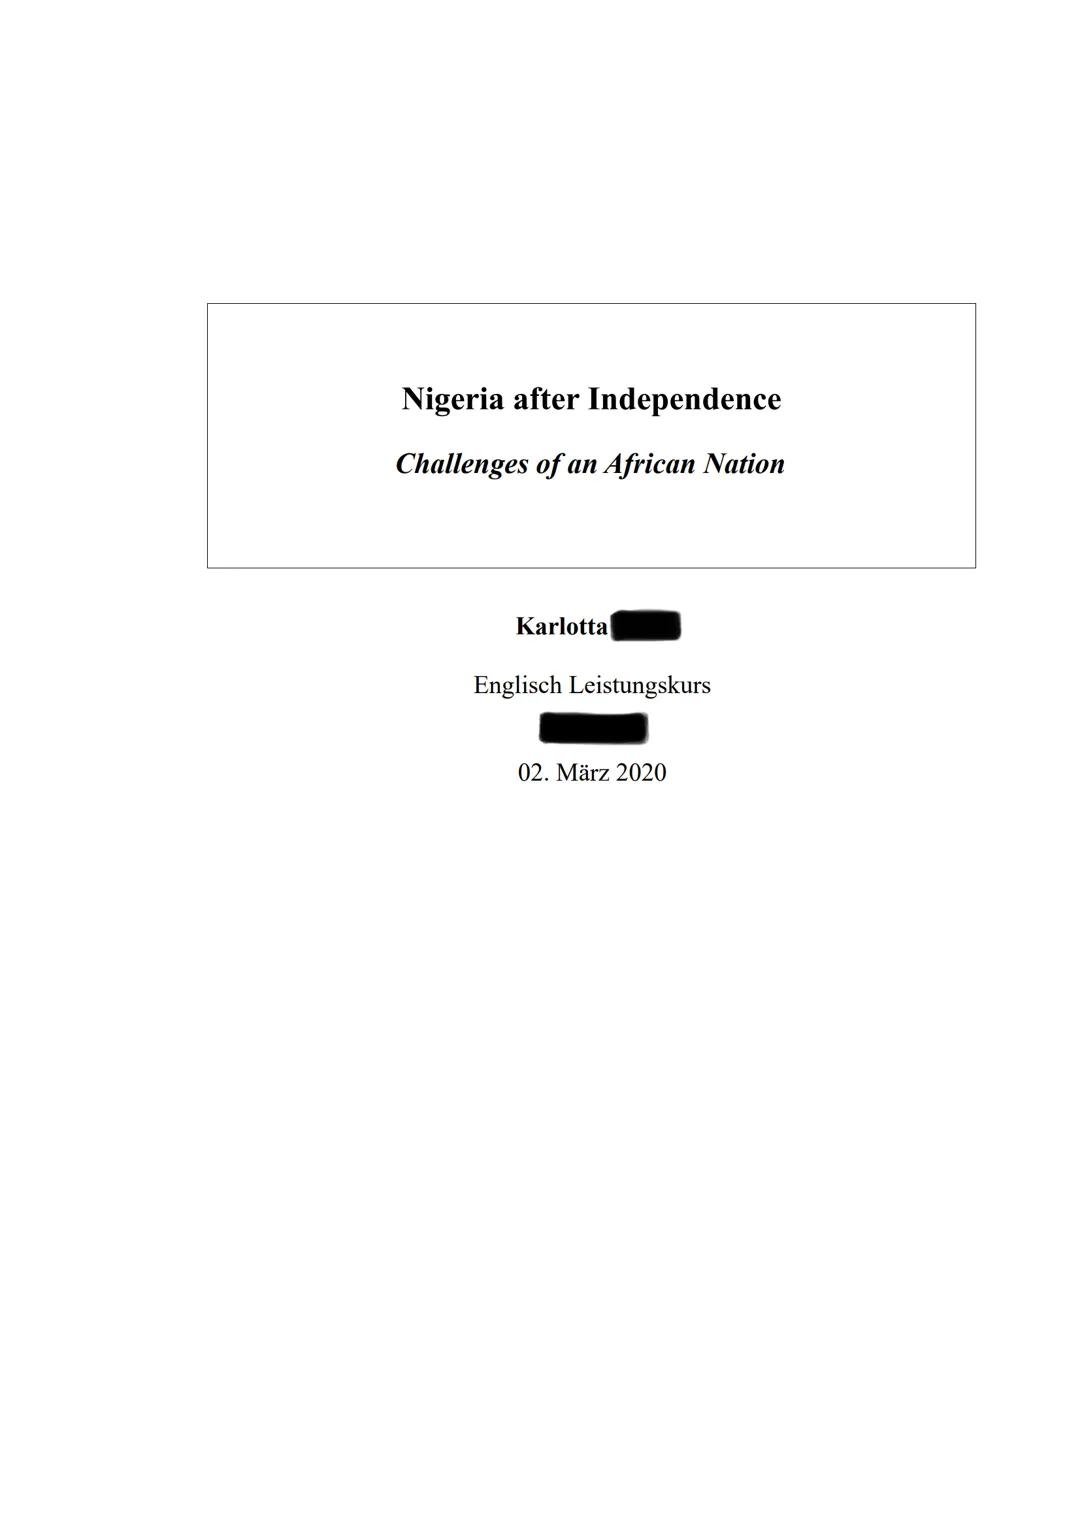 Nigeria after Independence
Challenges of an African Nation
Karlotta
Englisch Leistungskurs
02. März 2020 Nigeria after Independence:
Introdu